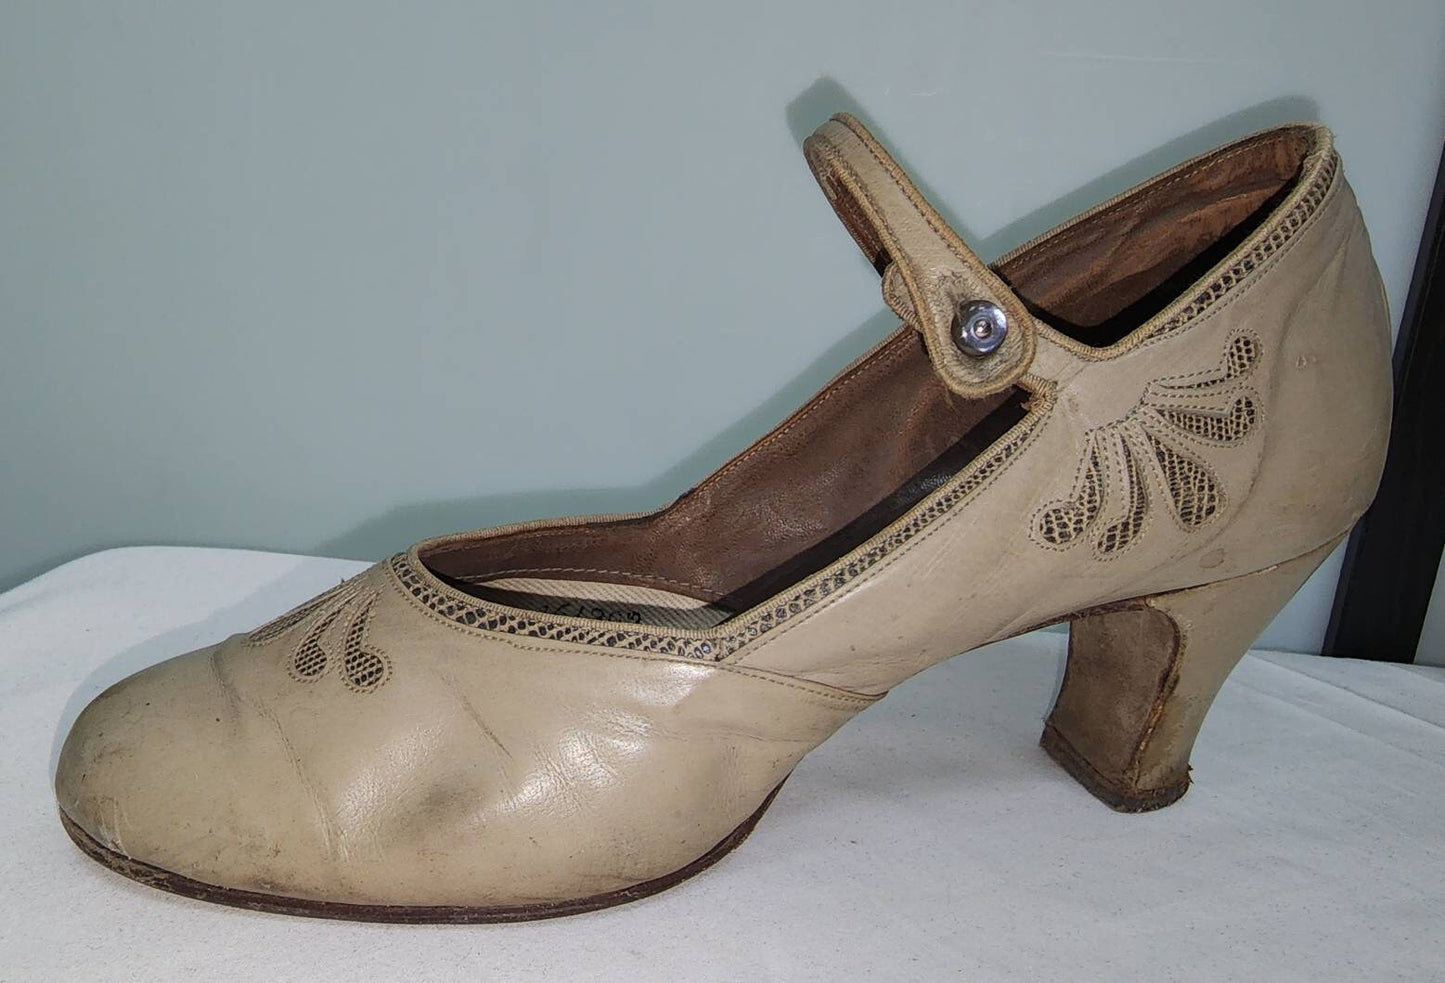 Vintage 1920s 30s Shoes Gray Green Beige Low Heel Ankle Strap Pumps Unique Cutout Designs Art Deco Flapper 7 AA